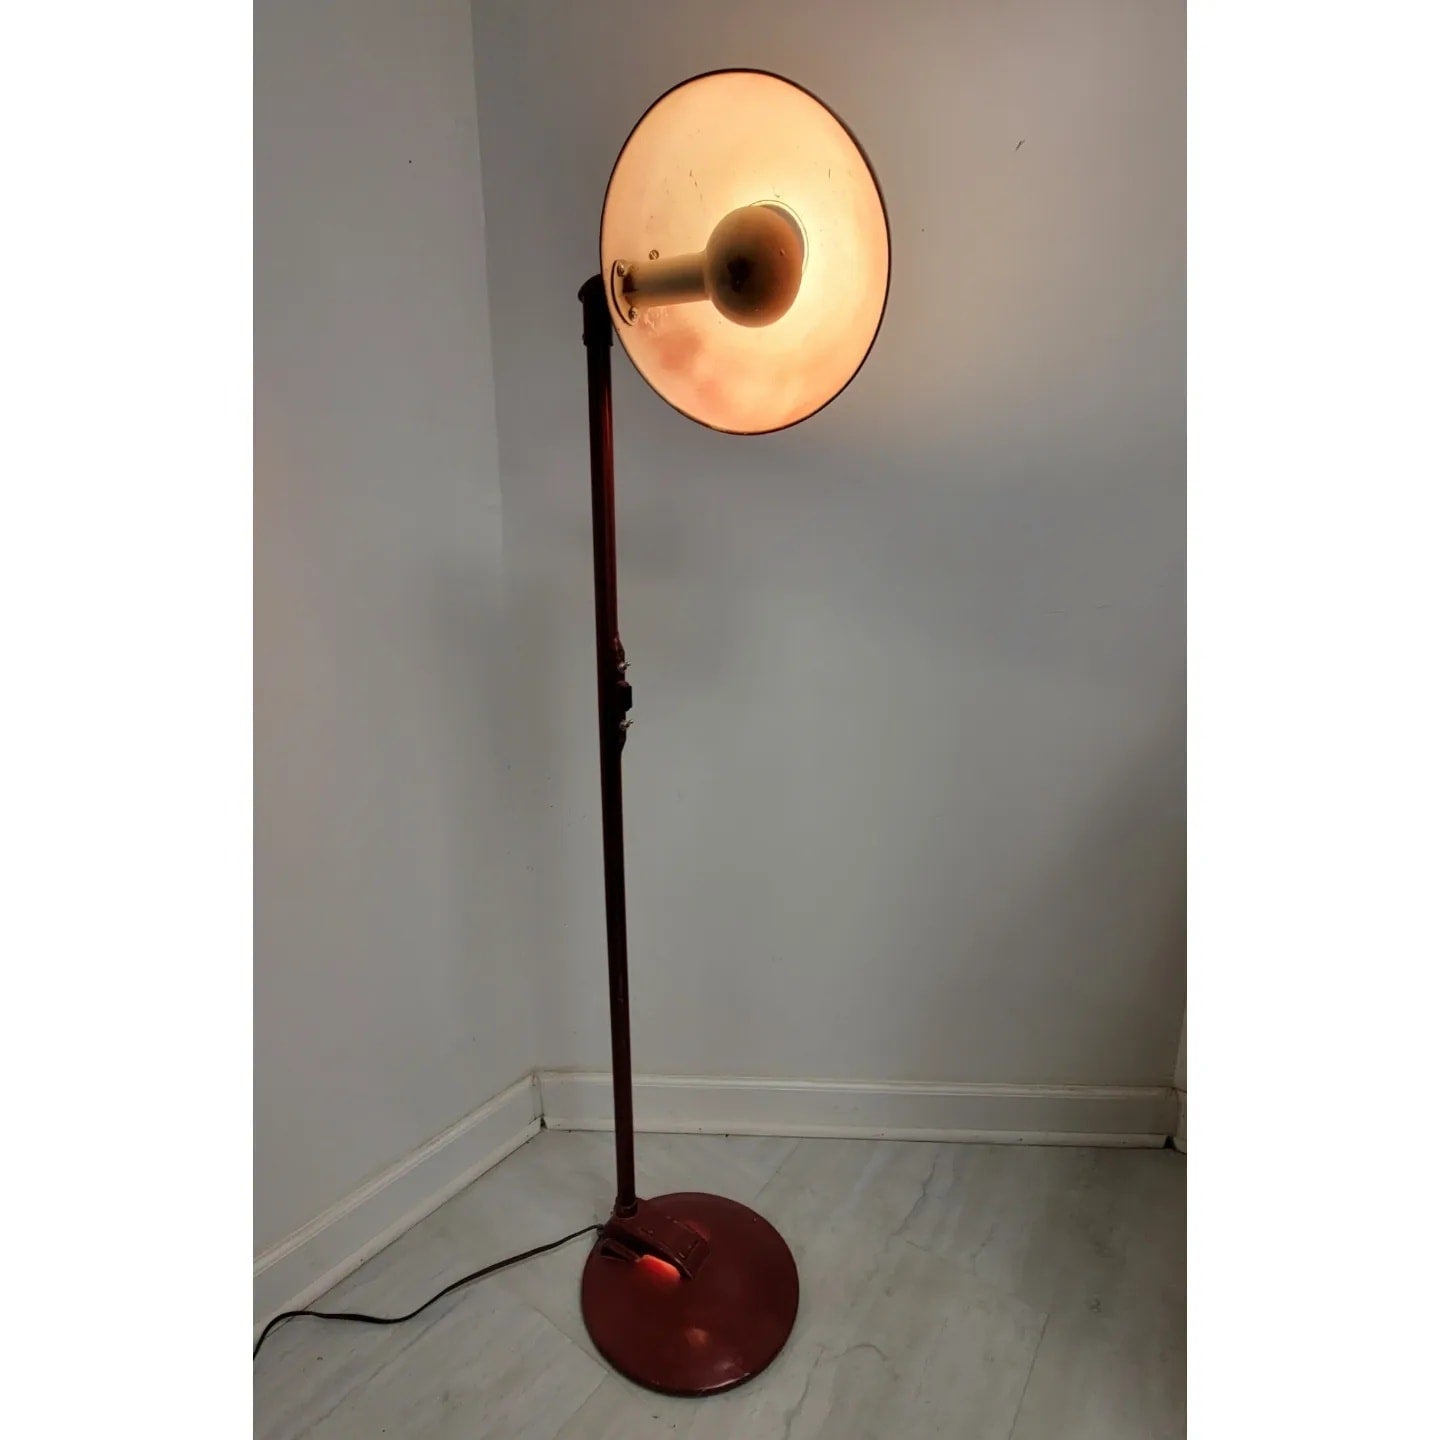 Vintage Art Deco Industrial Metal Medical Floor Lamp